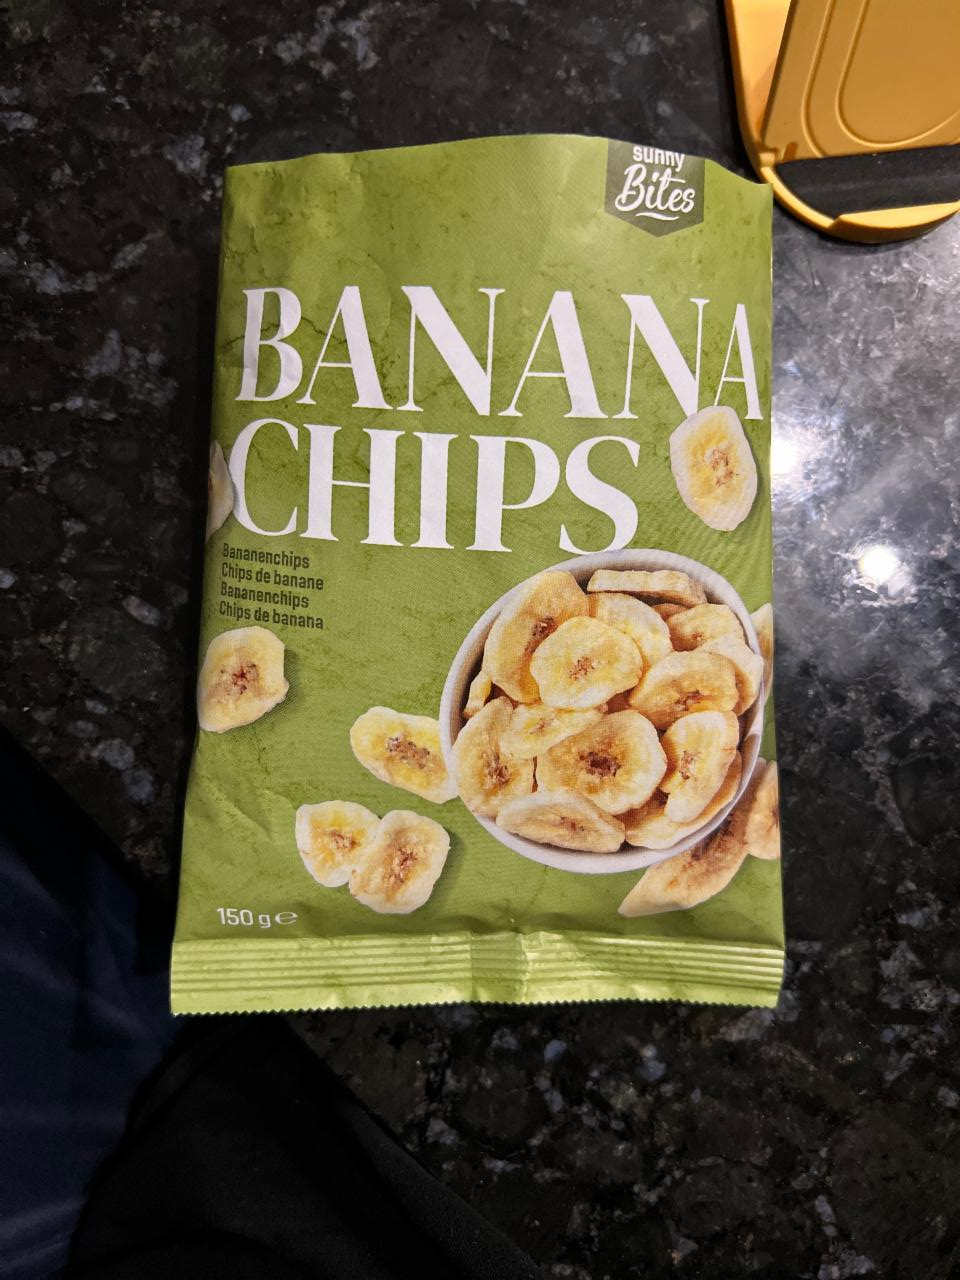 Фото - банановые чипсы Sunny bites